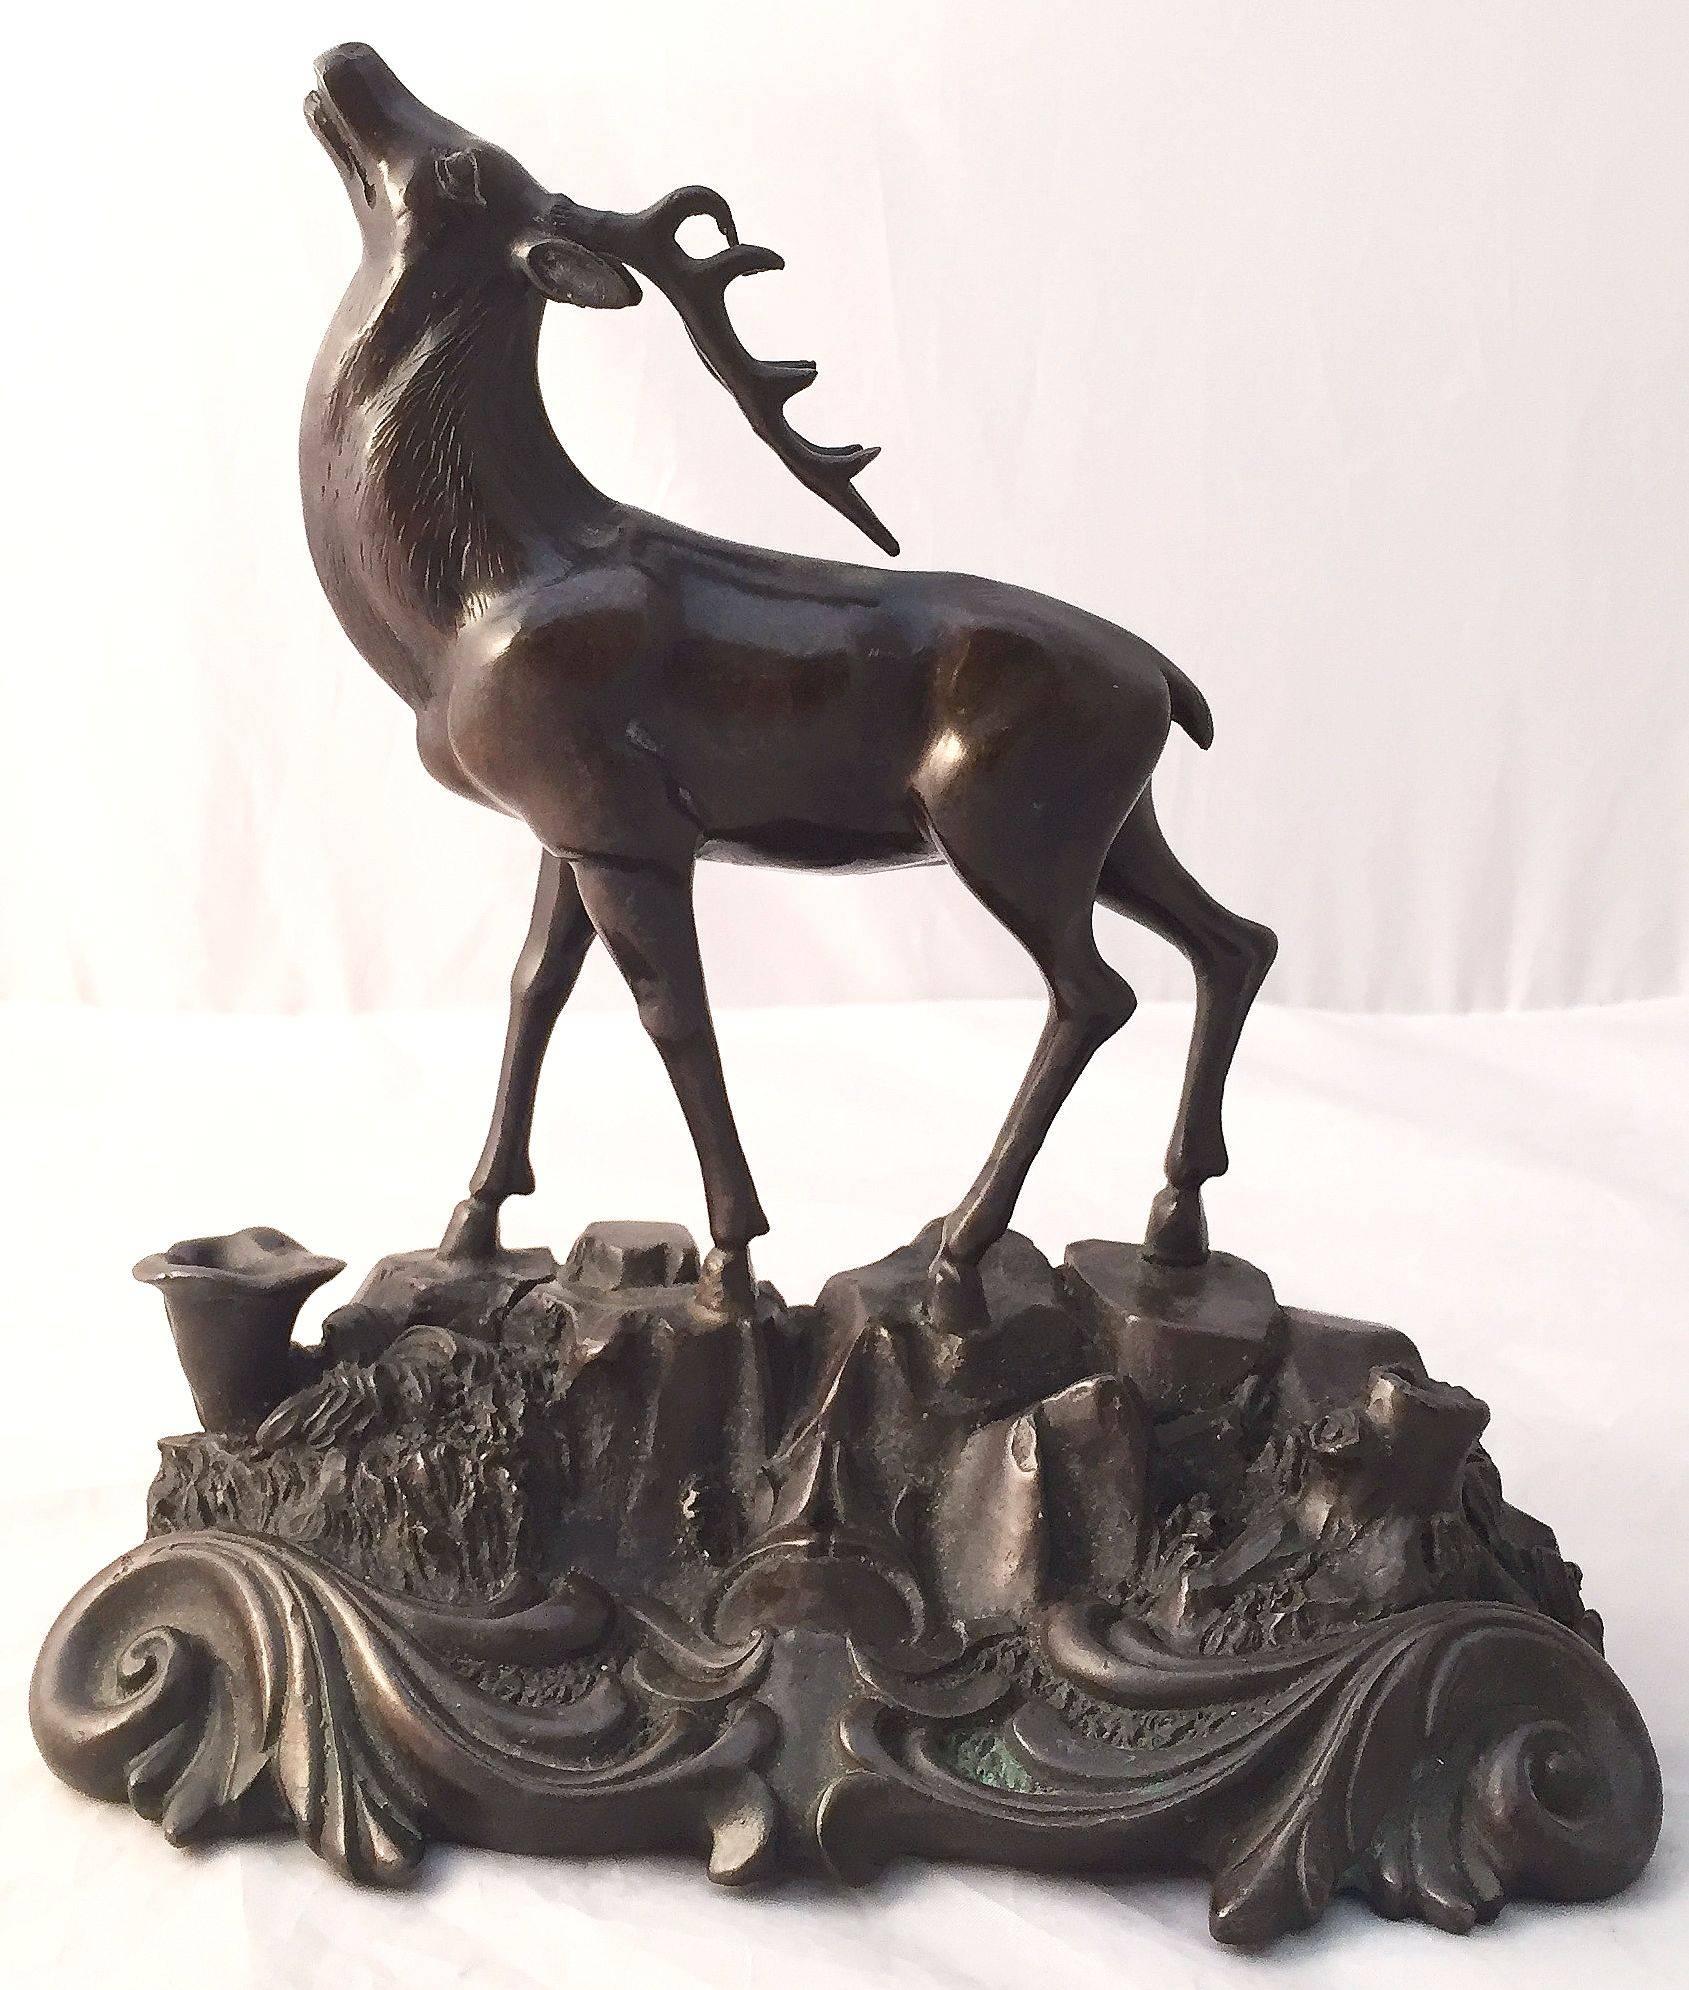 Belle statue française en bronze d'un cerf ou d'un chevreuil présentant un beau modelage en ronde-bosse, sur une base à volutes.